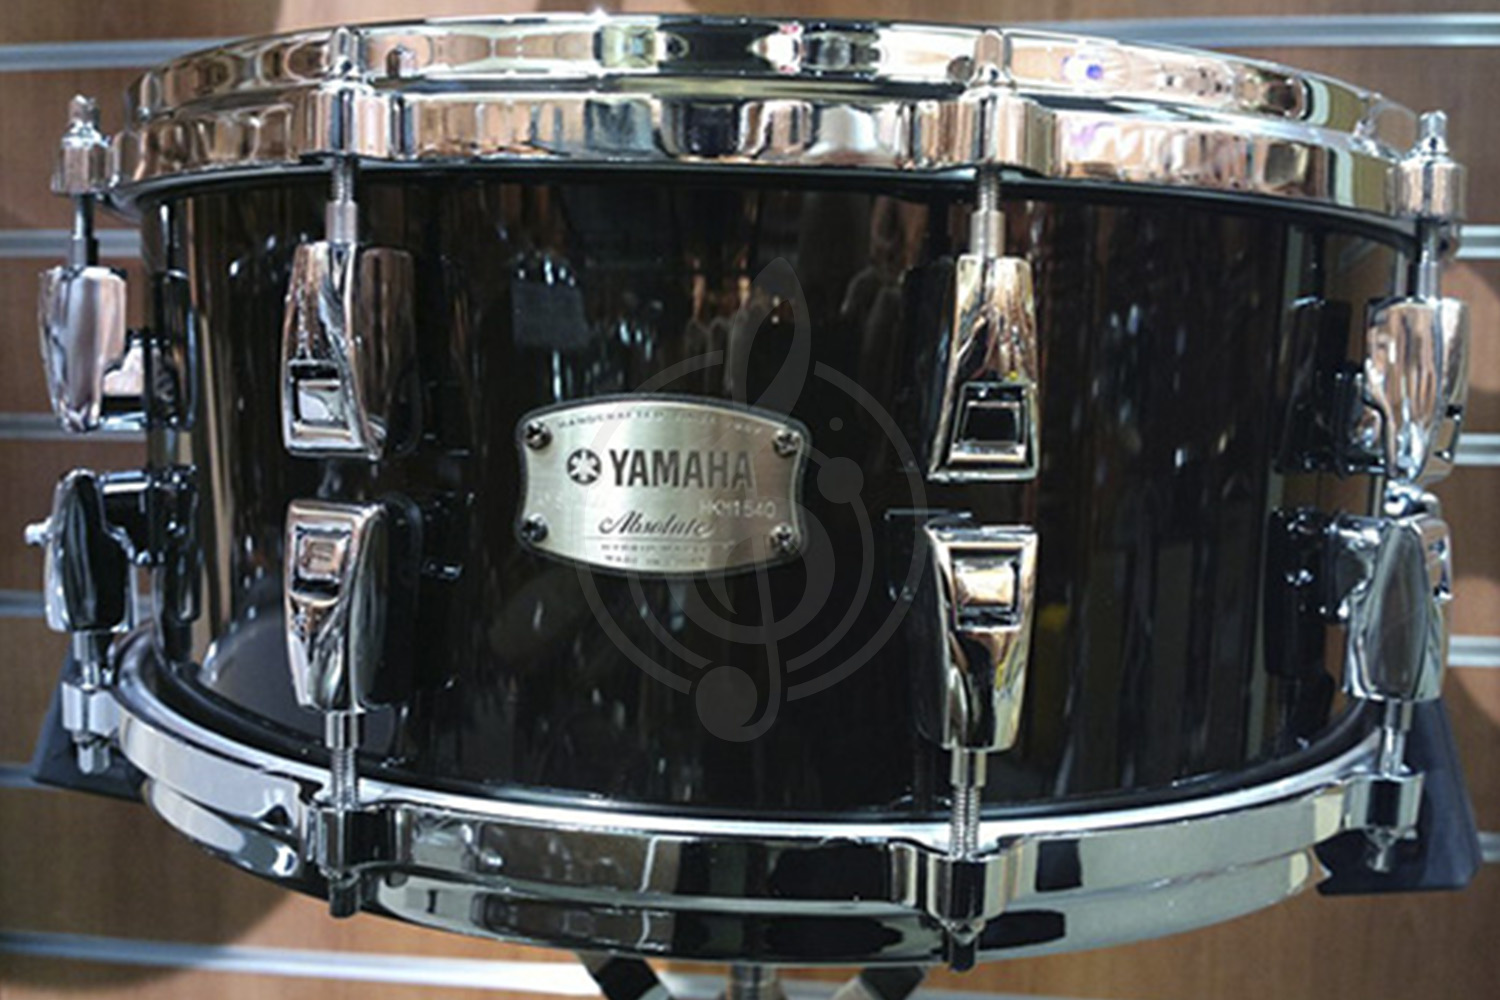 Малый барабан Малые барабаны Yamaha Yamaha AMS1460(SBL) малый барабан 14&quot;х6&quot; клён/ венге, 7 слоёв, 6,2 мм, цвет Solid Black AMS1460 SOLID BLACK - фото 1